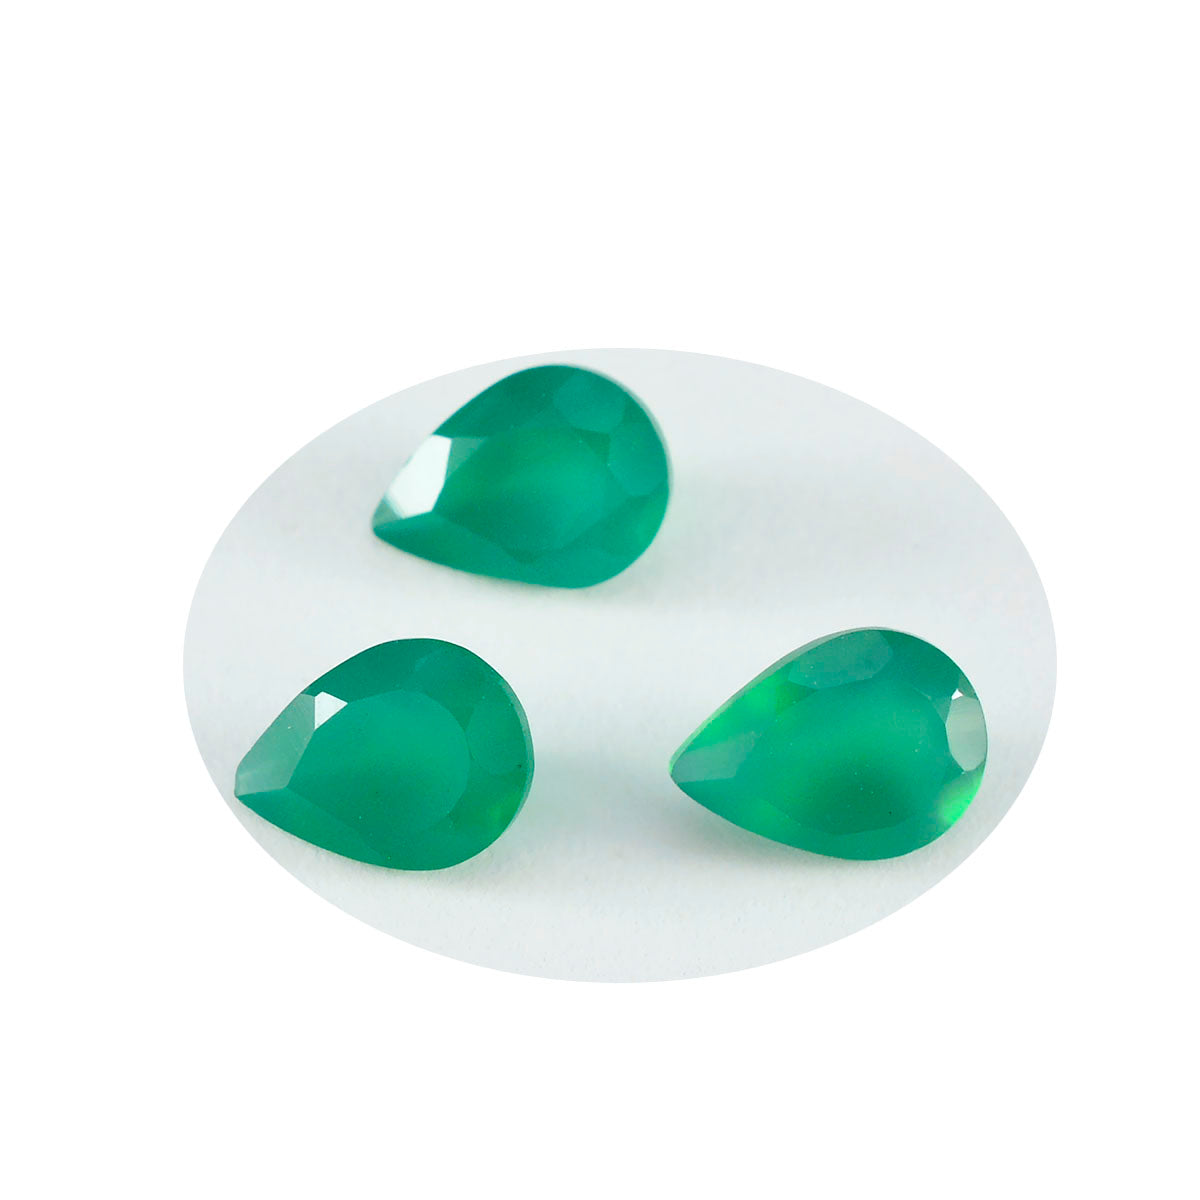 riyogems 1st äkta grön onyx fasetterad 6x9 mm päronform fantastiska kvalitetsädelstenar